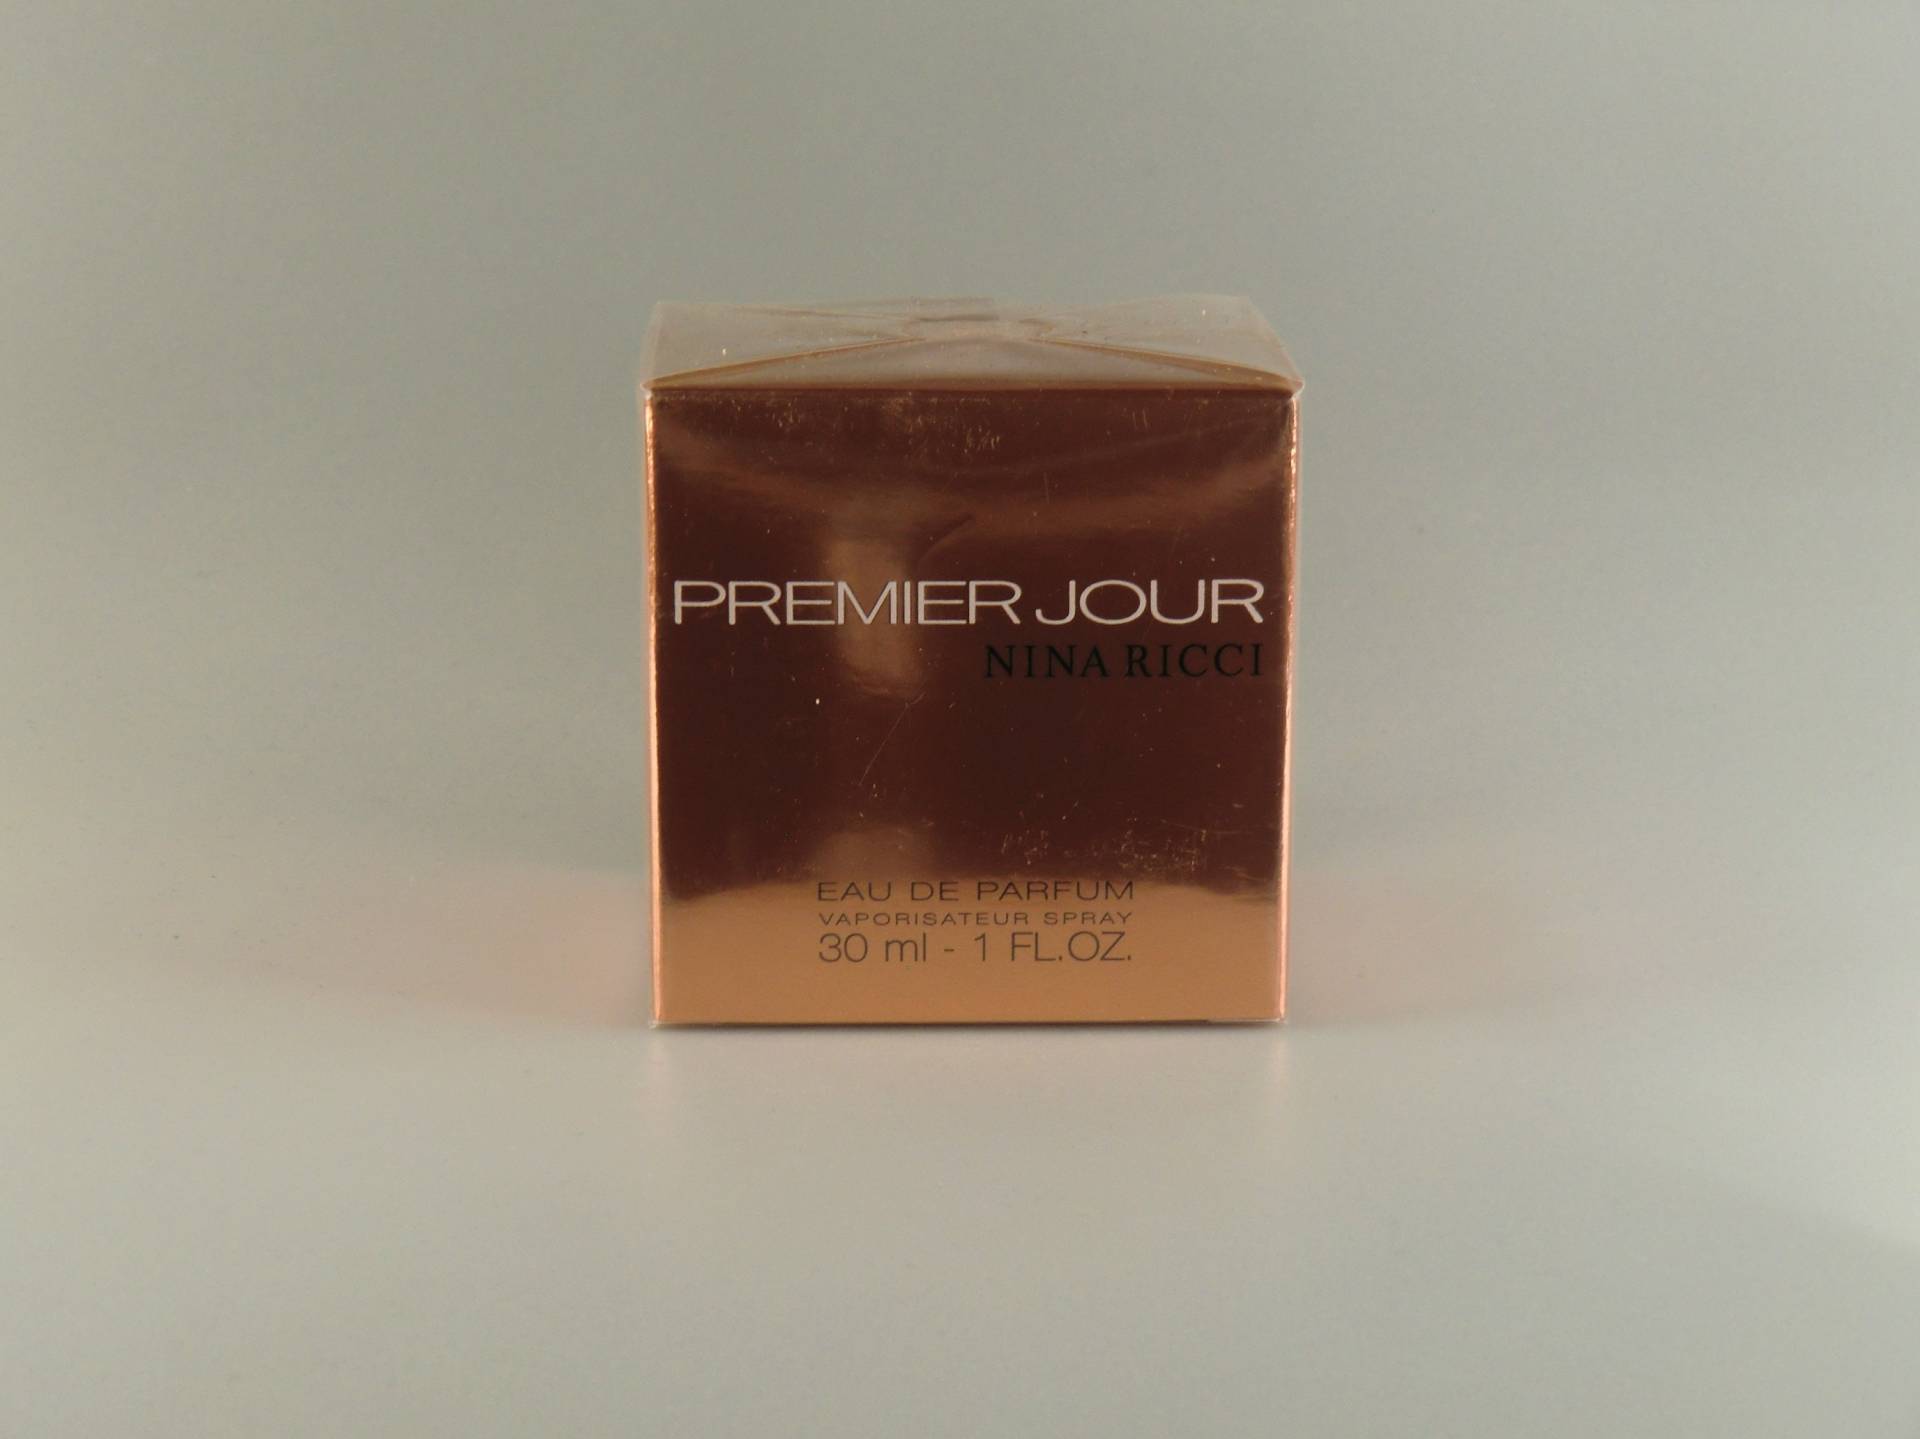 Nina Riccipremier Jour Eau De Parfum 1 Fl.oz./30Ml von VintageRetroEu